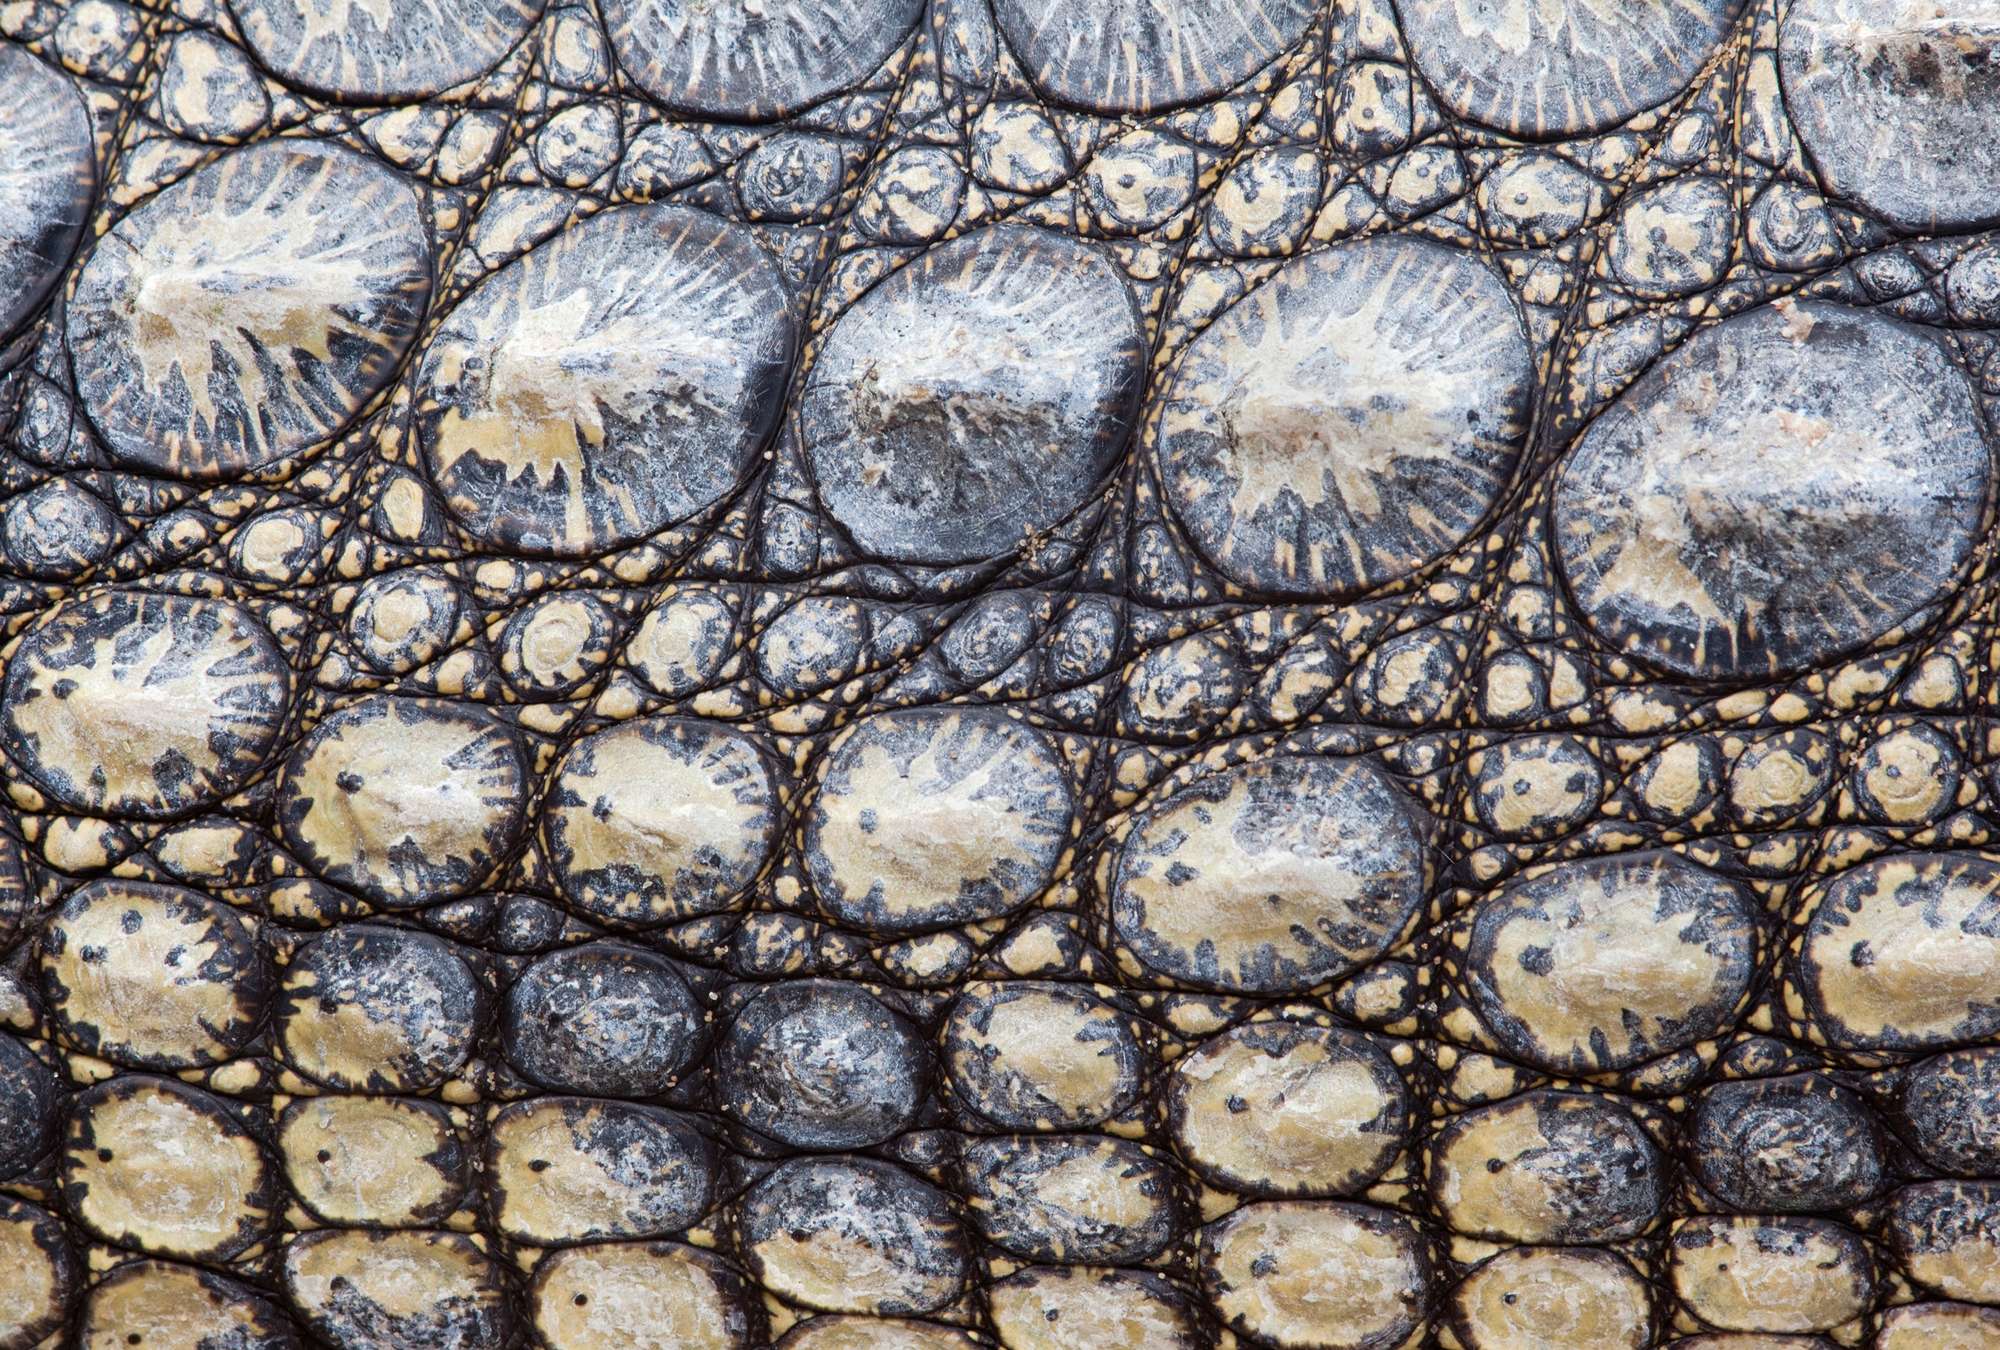             Piel de cocodrilo: aspecto de reptil con efecto 3D
        